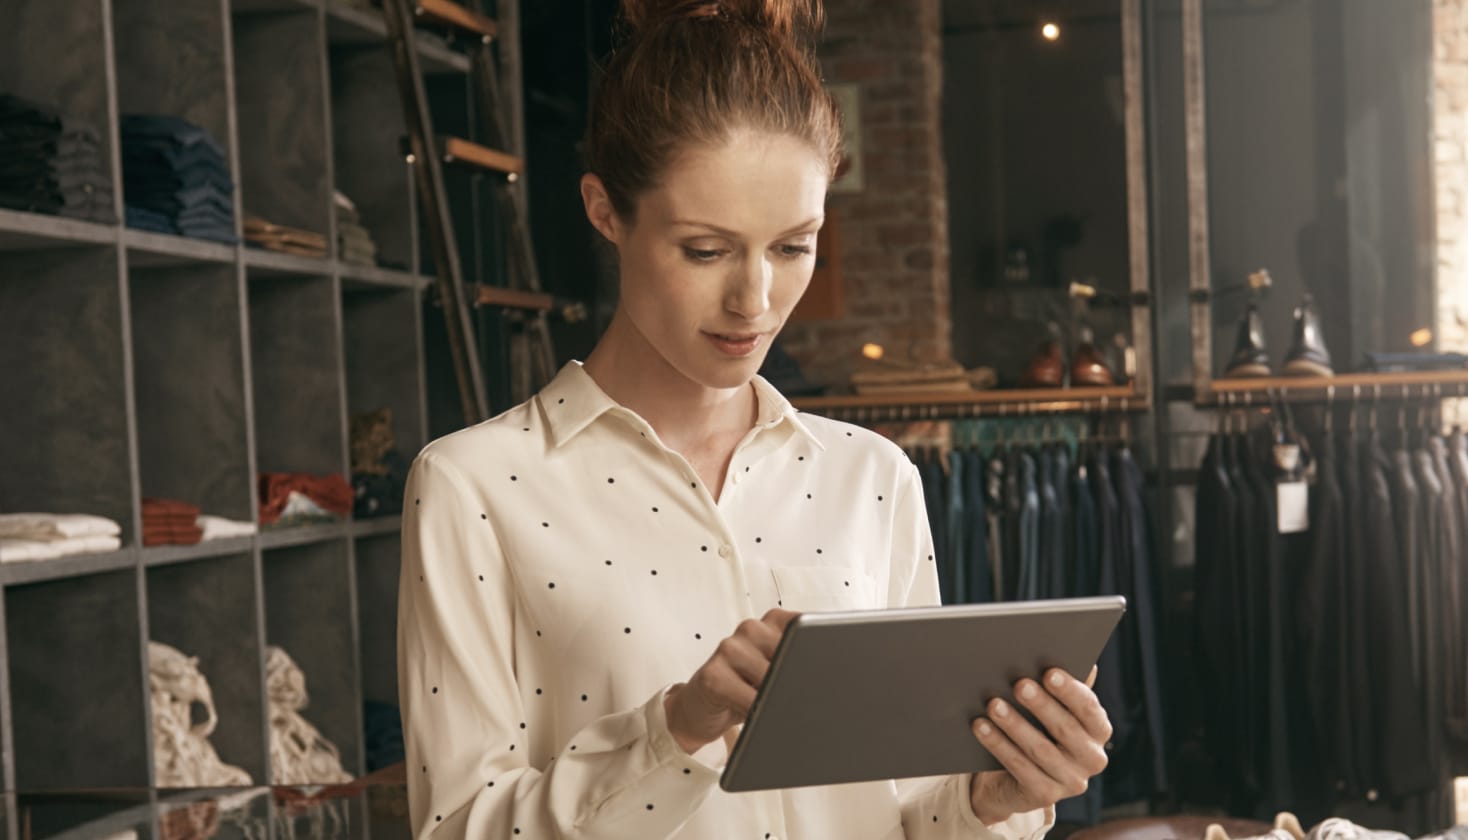 Человек в магазине одежды смотрит на экран планшета, предположительно читая ответы клиентов на опрос